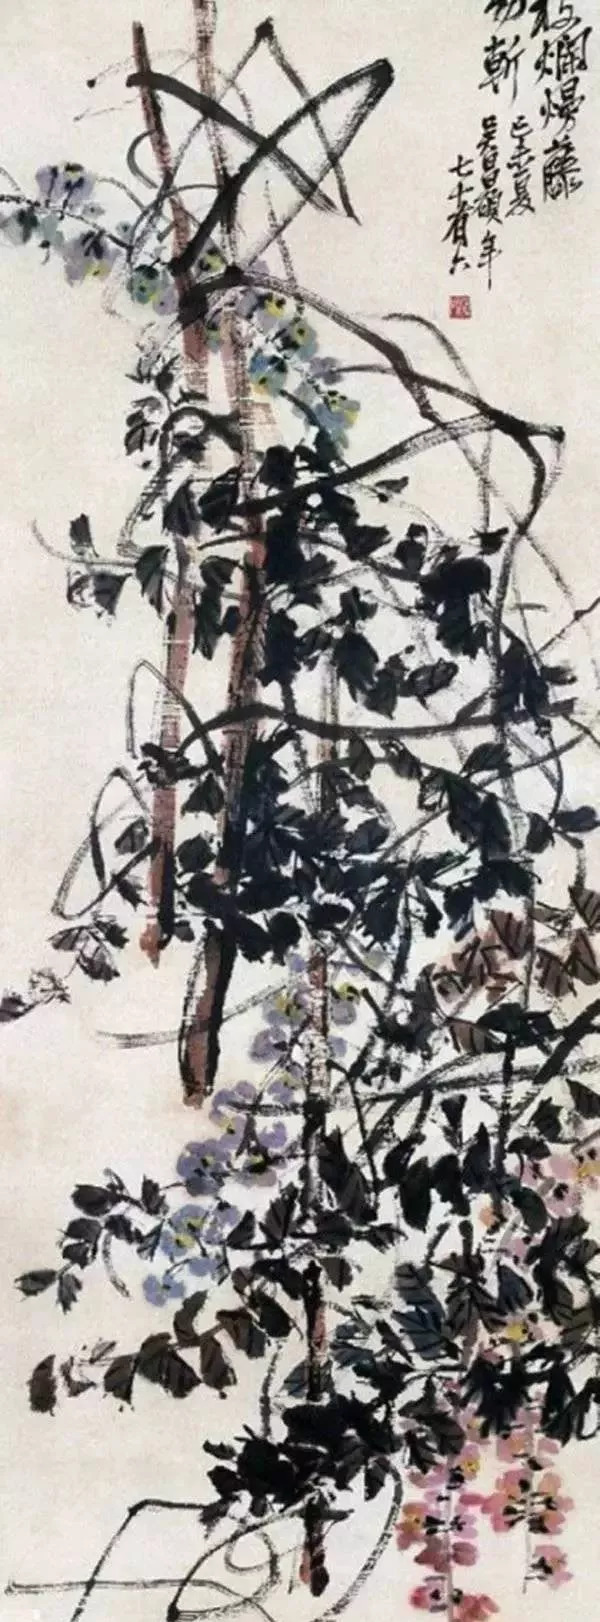 这种美学性格在吴昌硕的紫藤作品中抒写得相当生动尽致.